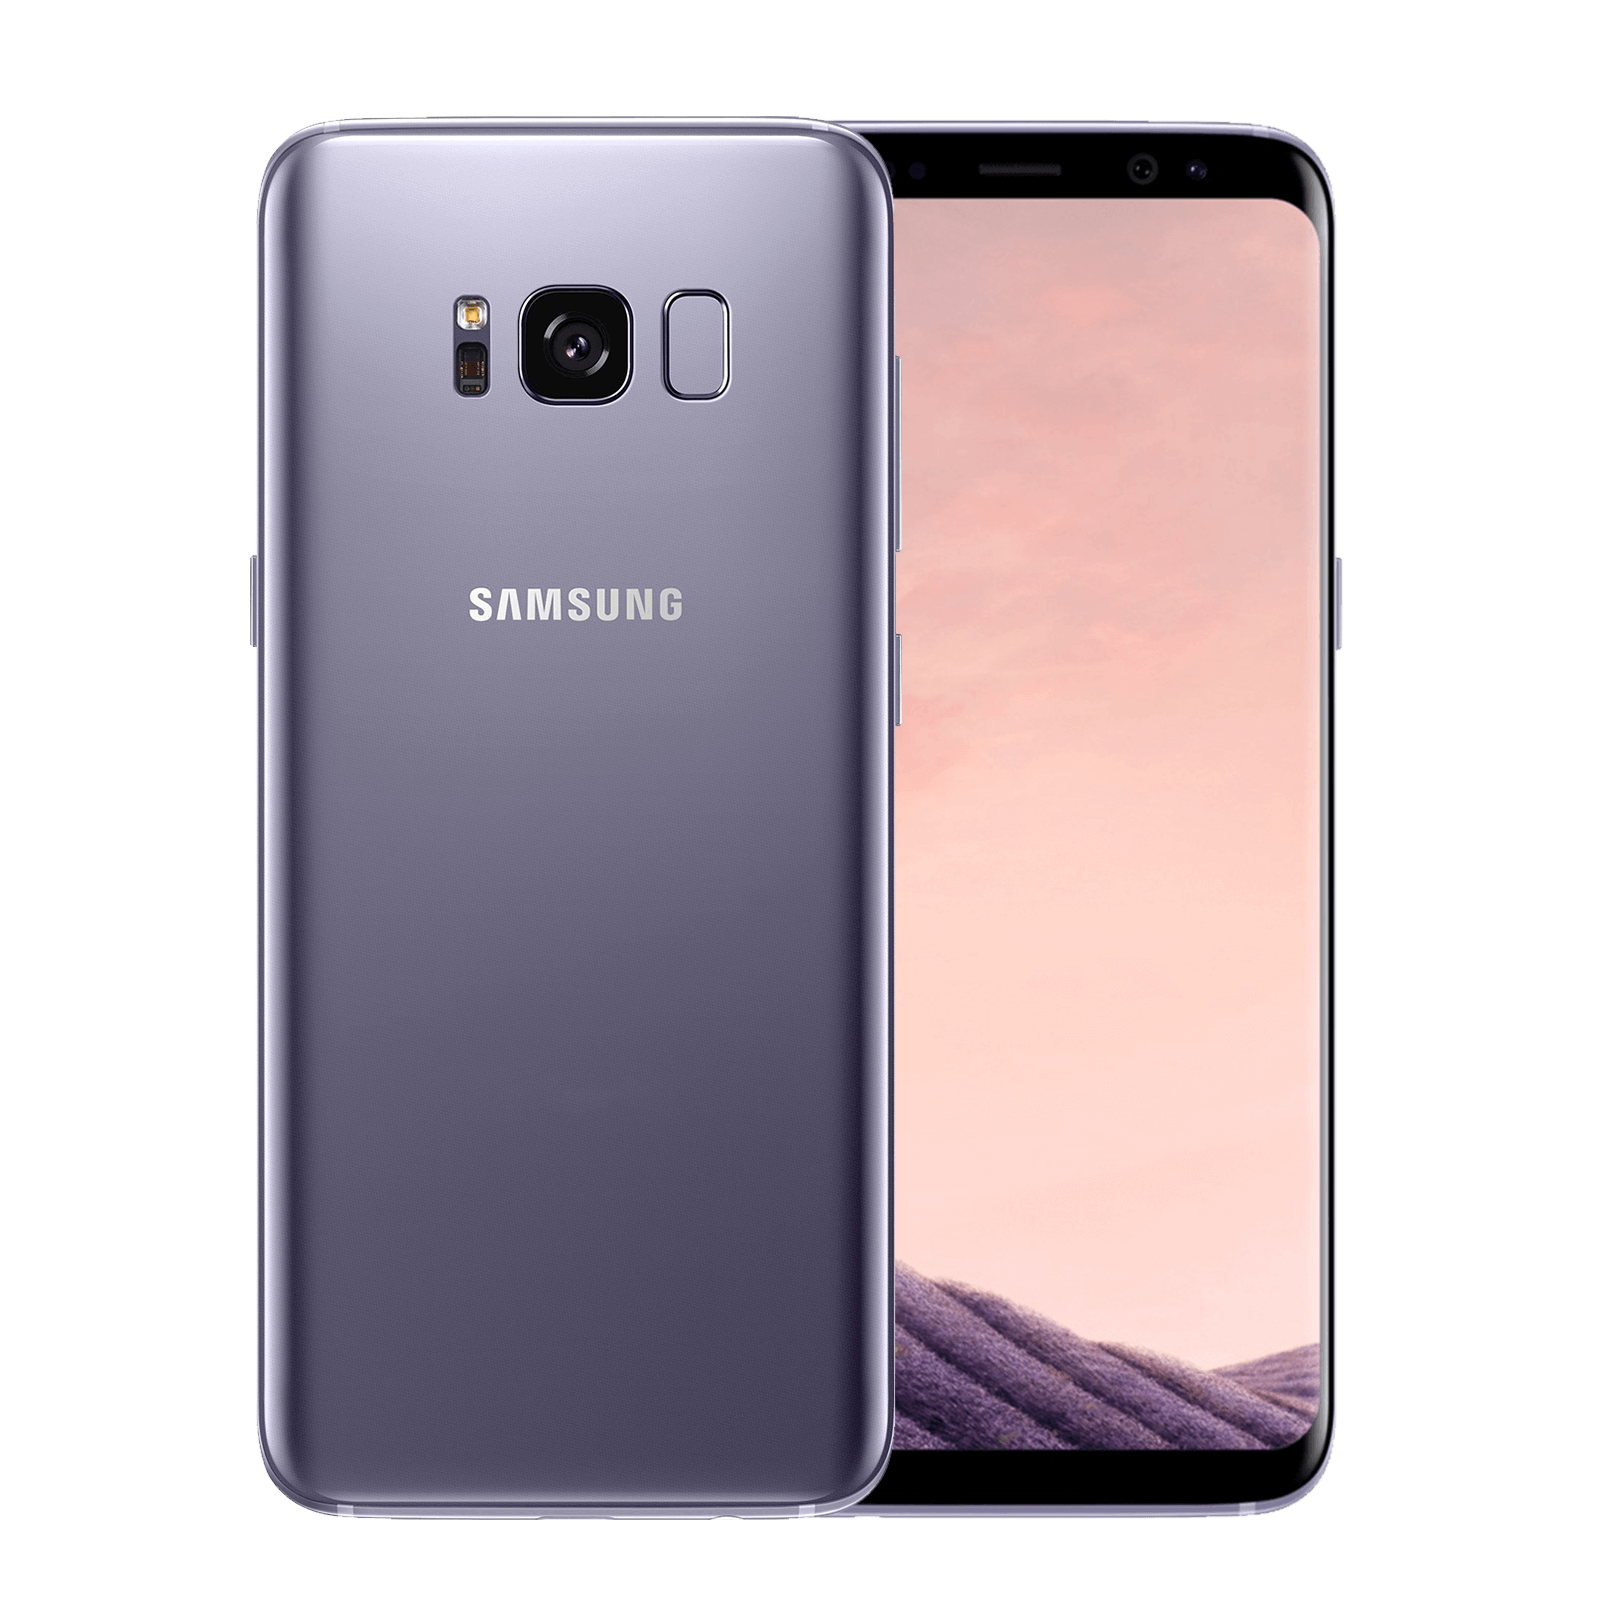 Samsung Galaxy S8 64GB Grey Good - Unlocked